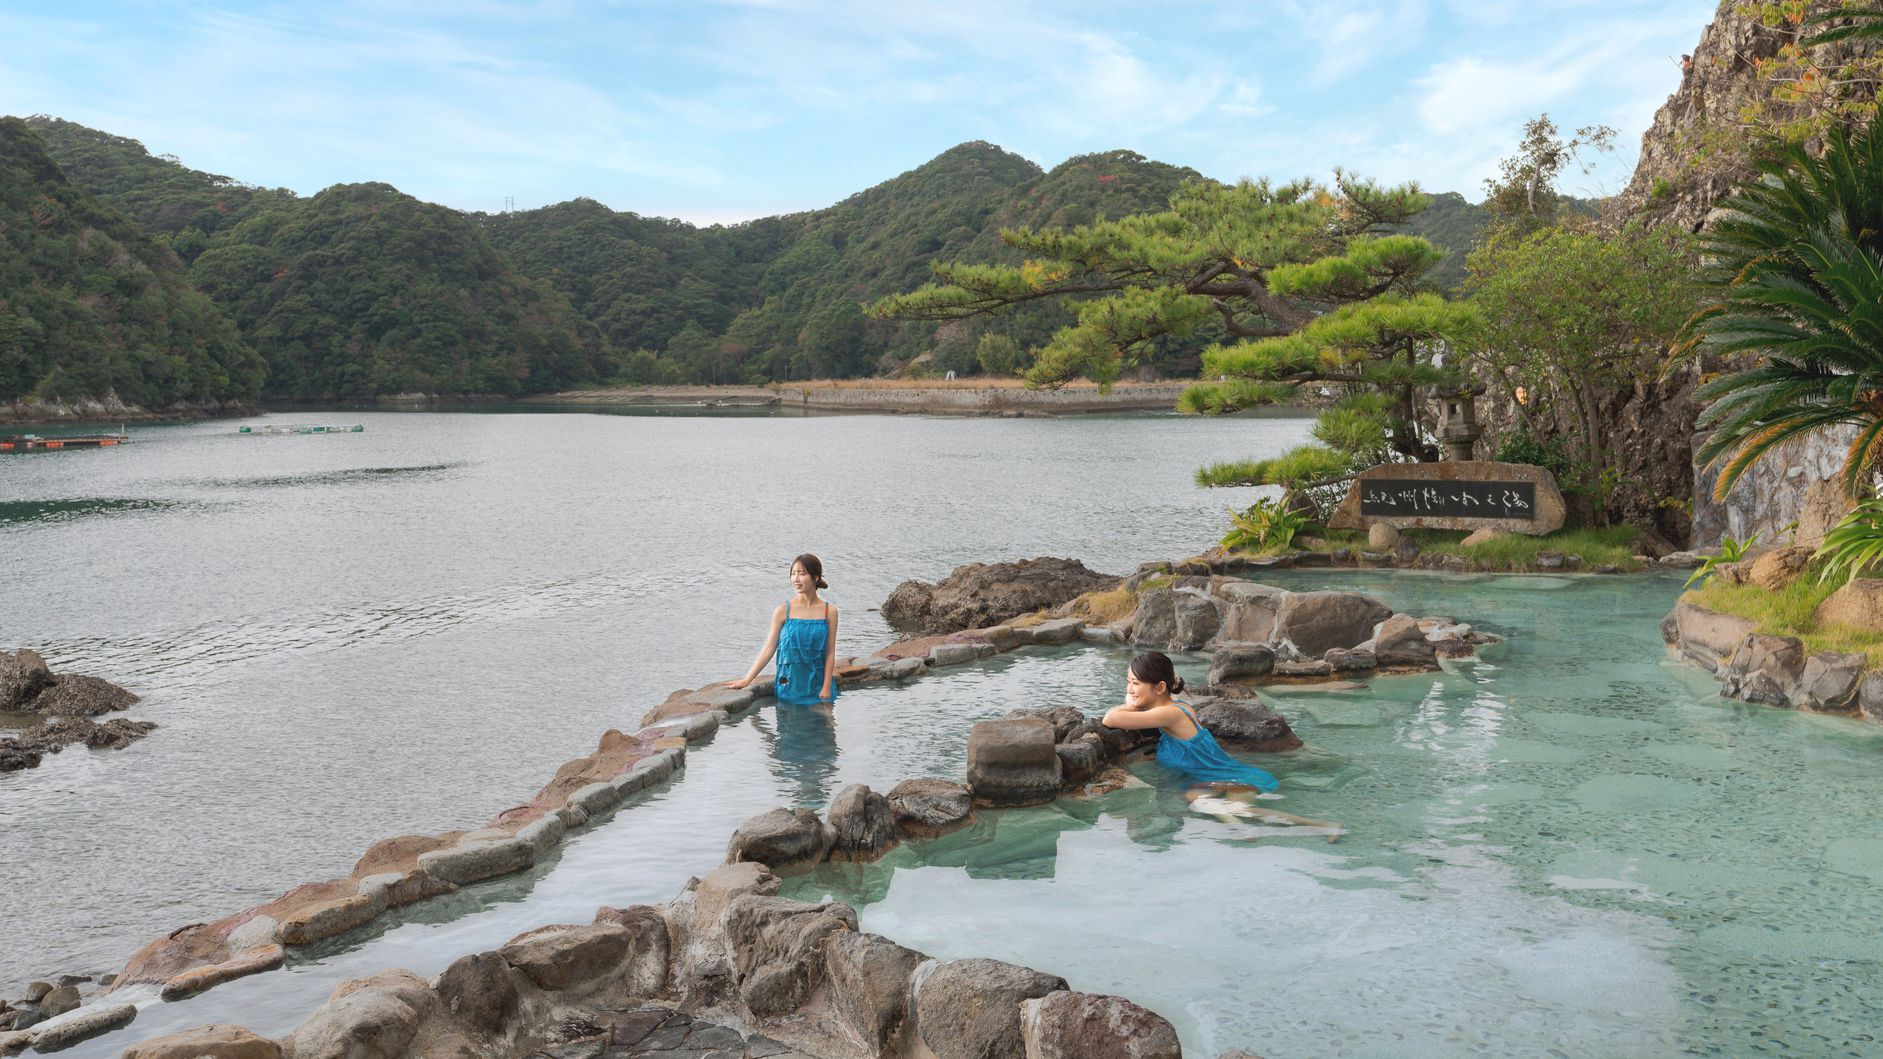 「紀州潮聞之湯」ではその名のとおり打ち寄せる波の音を聞きながら 開放感あふれる温泉を楽しめます。